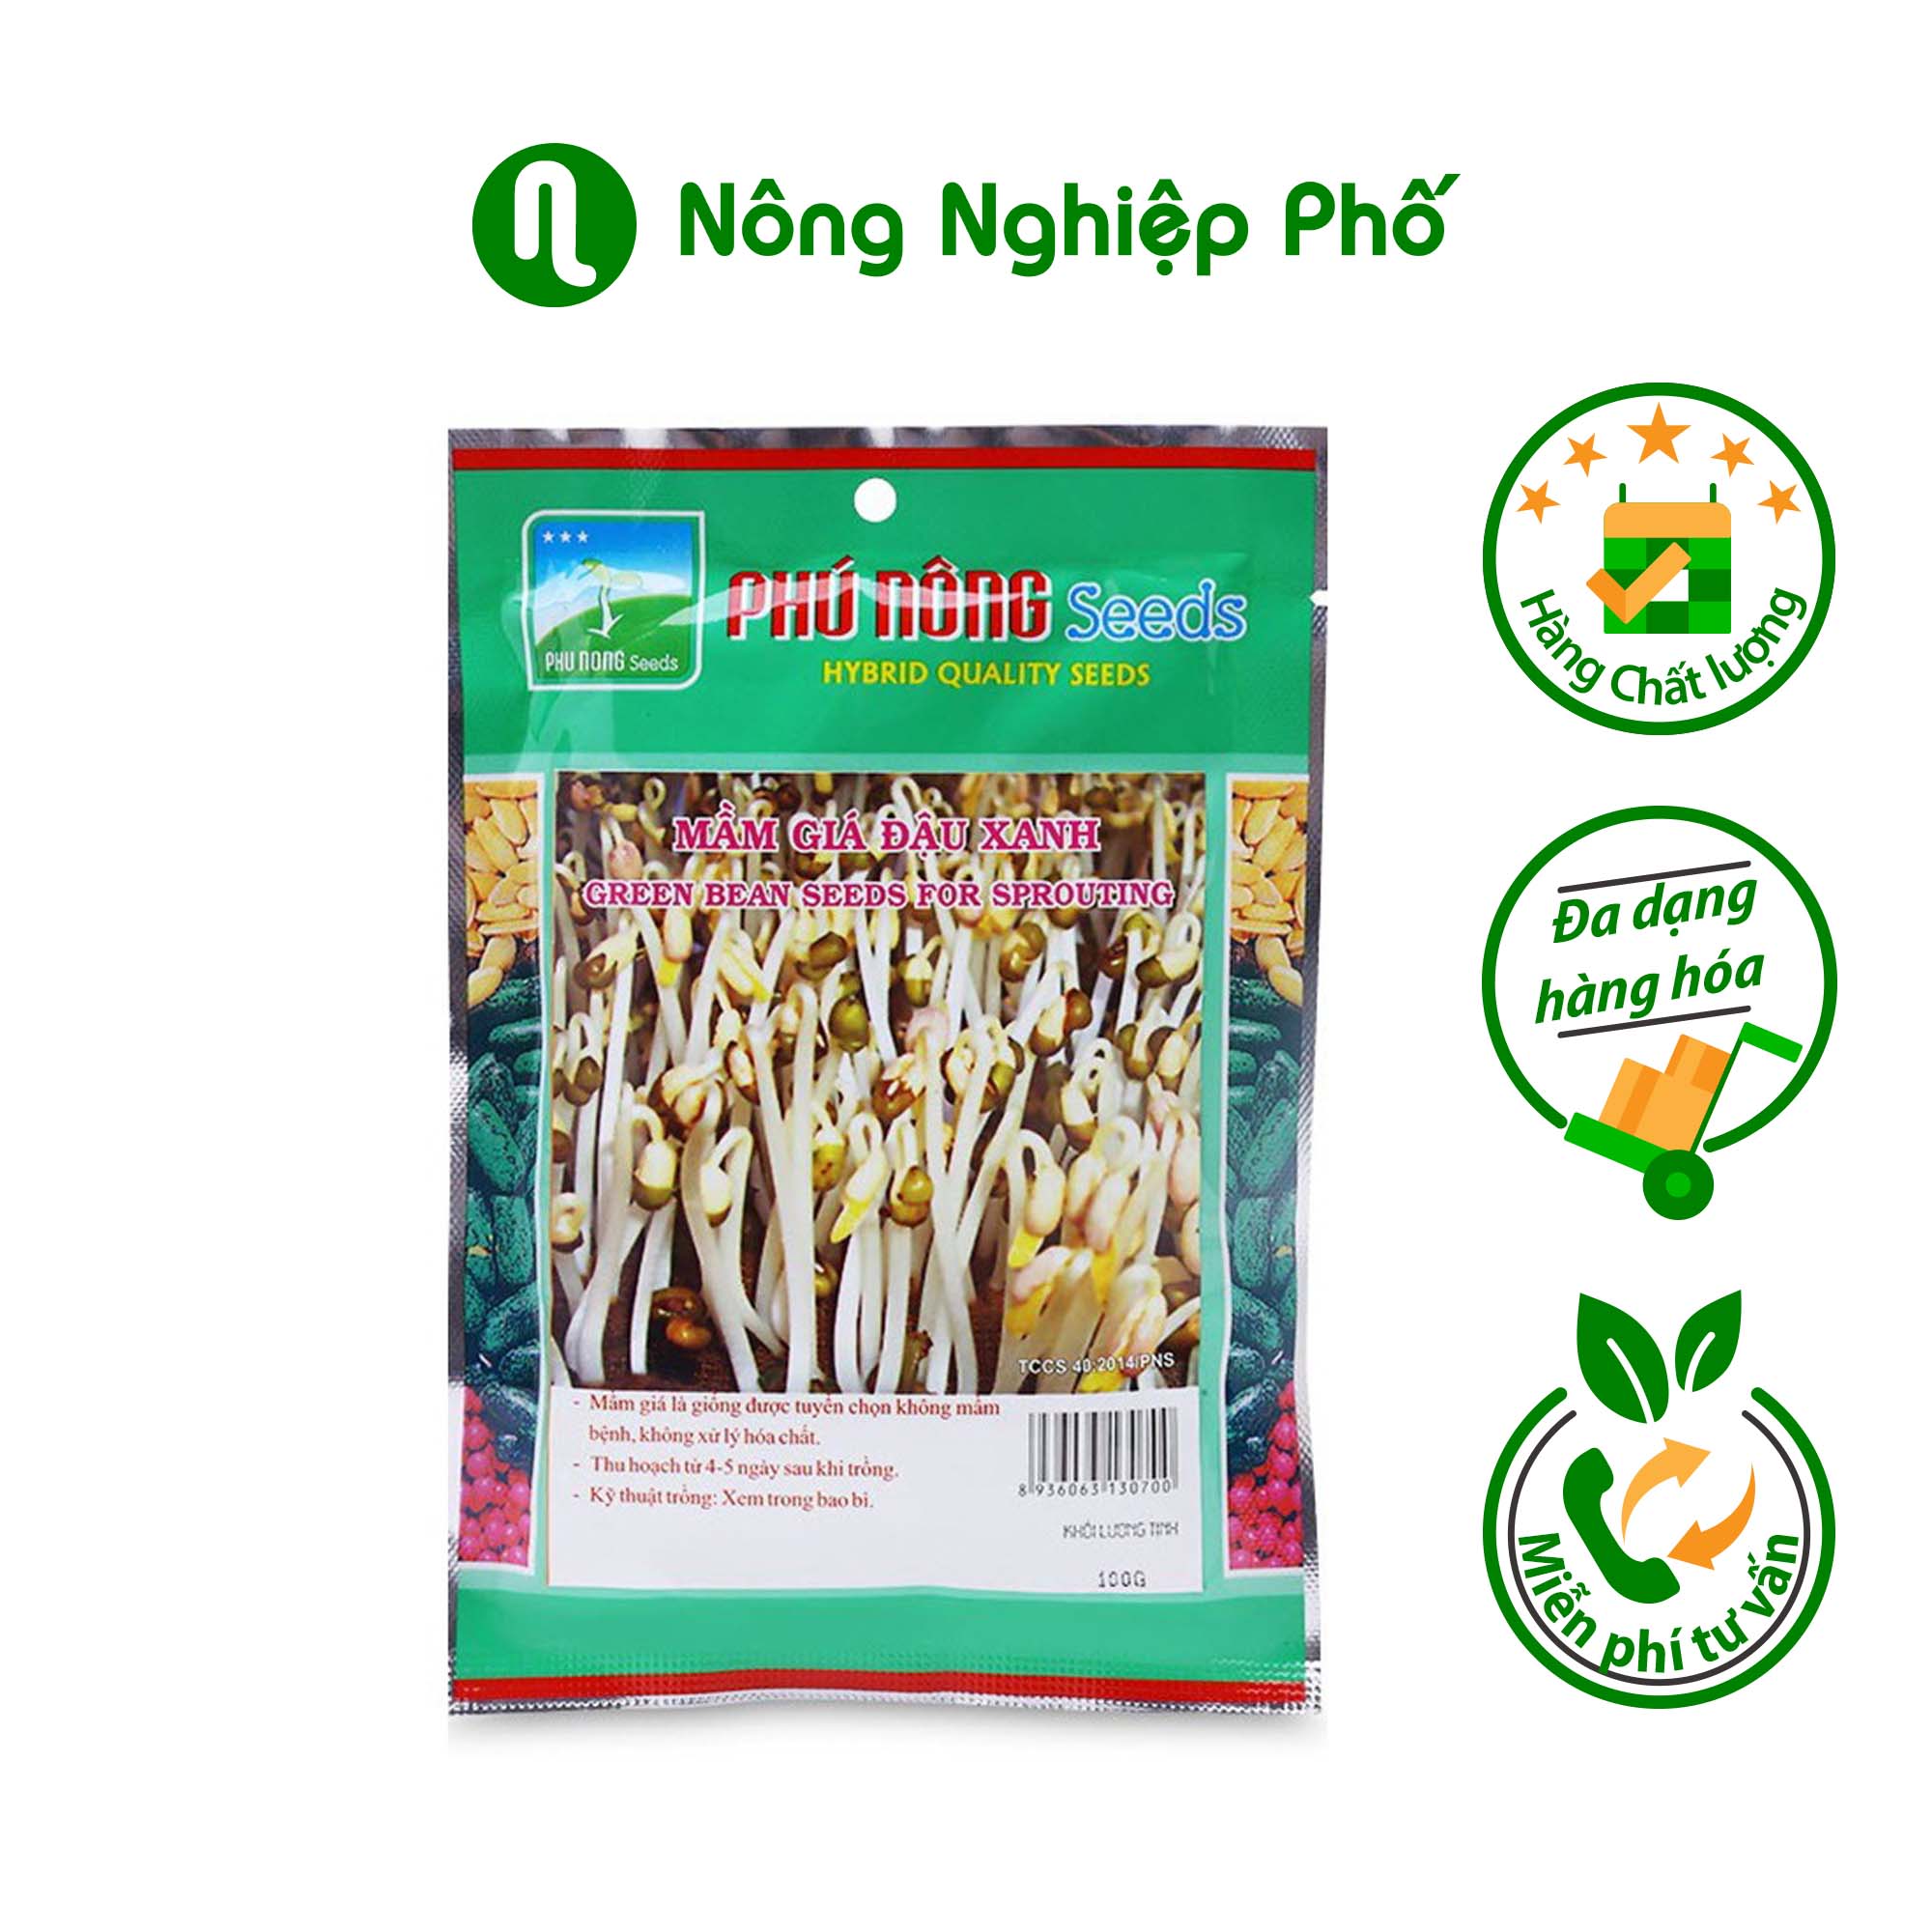 Hạt Giống Mầm Giá Đậu Xanh Phú Nông (100g / Gói)